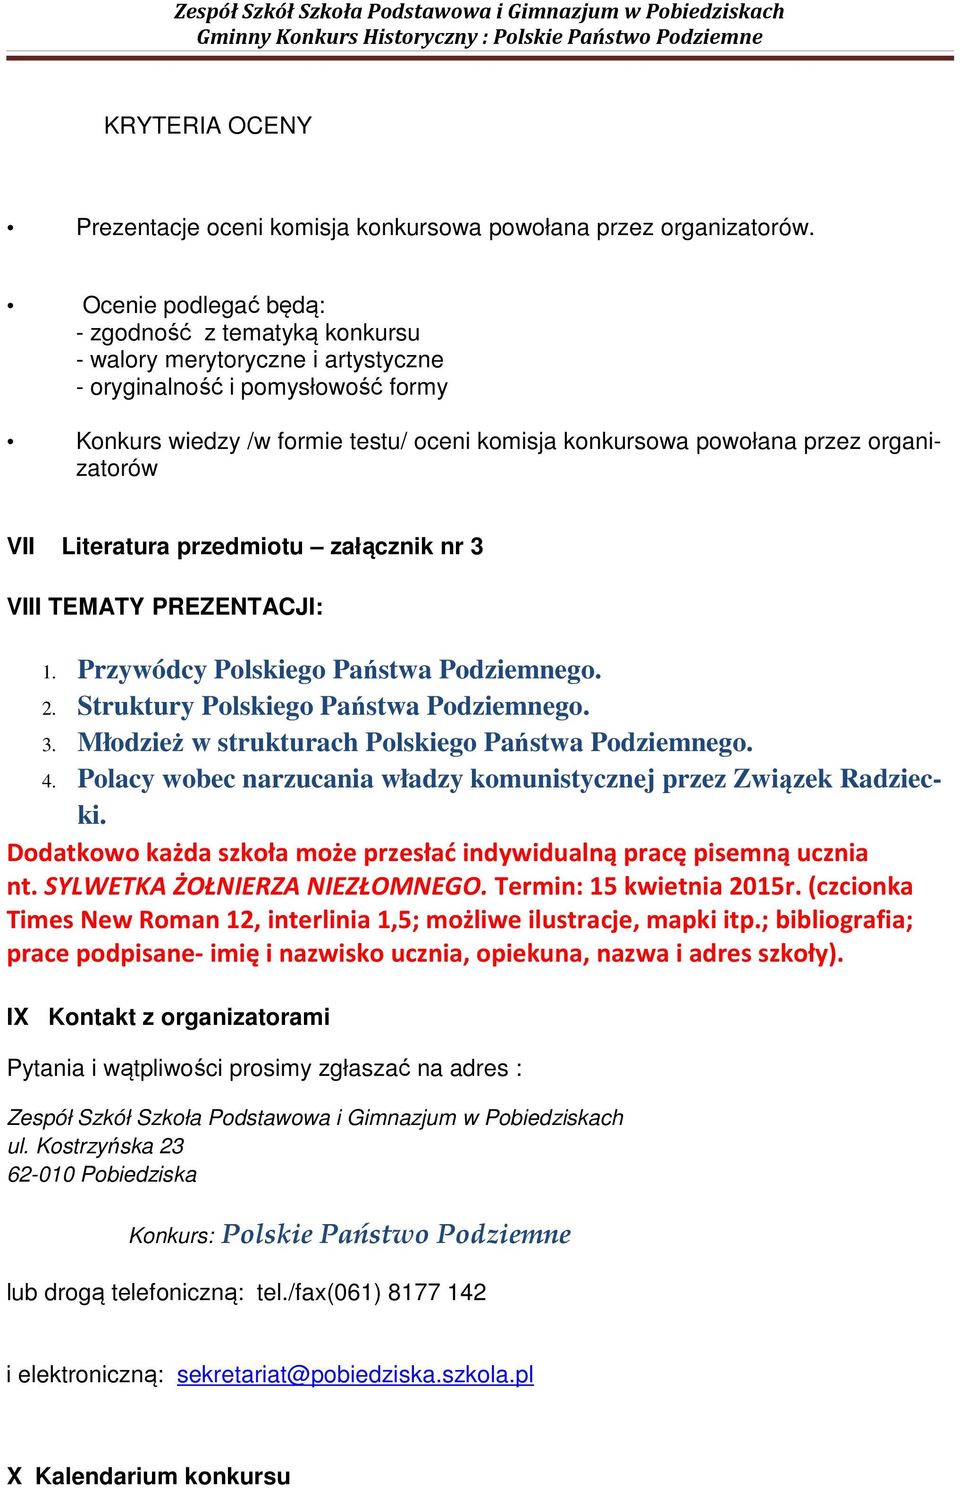 2 Struktury Polskiego Państwa Podziemnego 3 Młodzież w strukturach Polskiego Państwa Podziemnego 4 Polacy wobec narzucania władzy komunistycznej przez Związek Radziecki Dodatkowo każda szkoła może